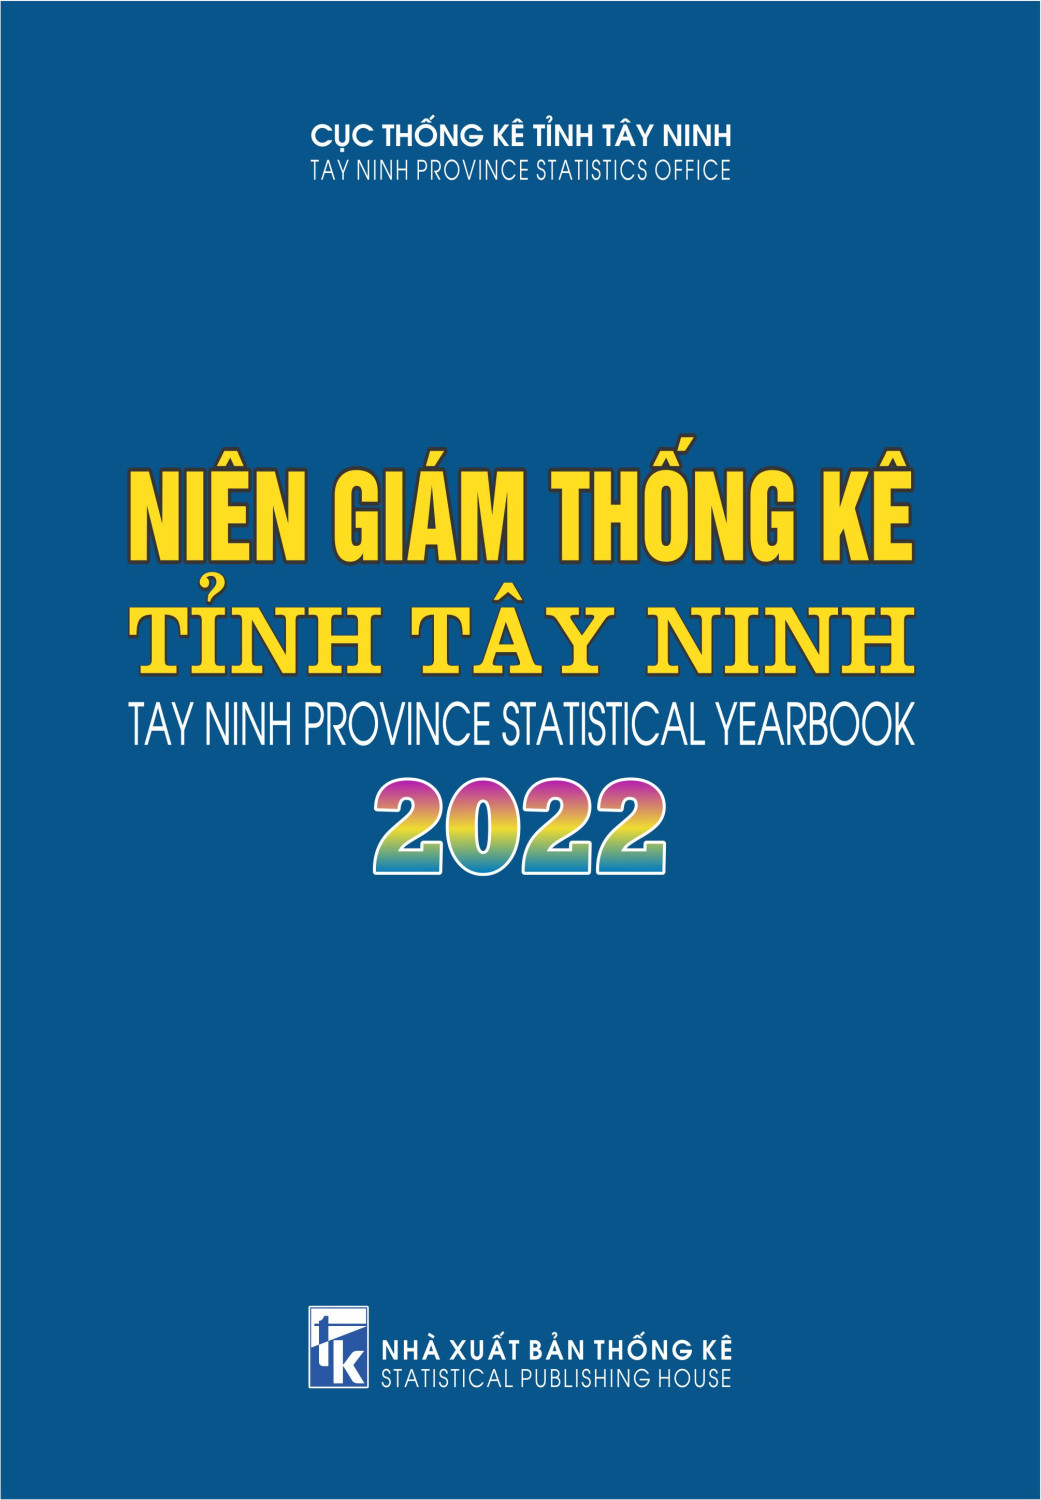 Trảng Bàng: Niêm giám Thống kê tỉnh Tây Ninh